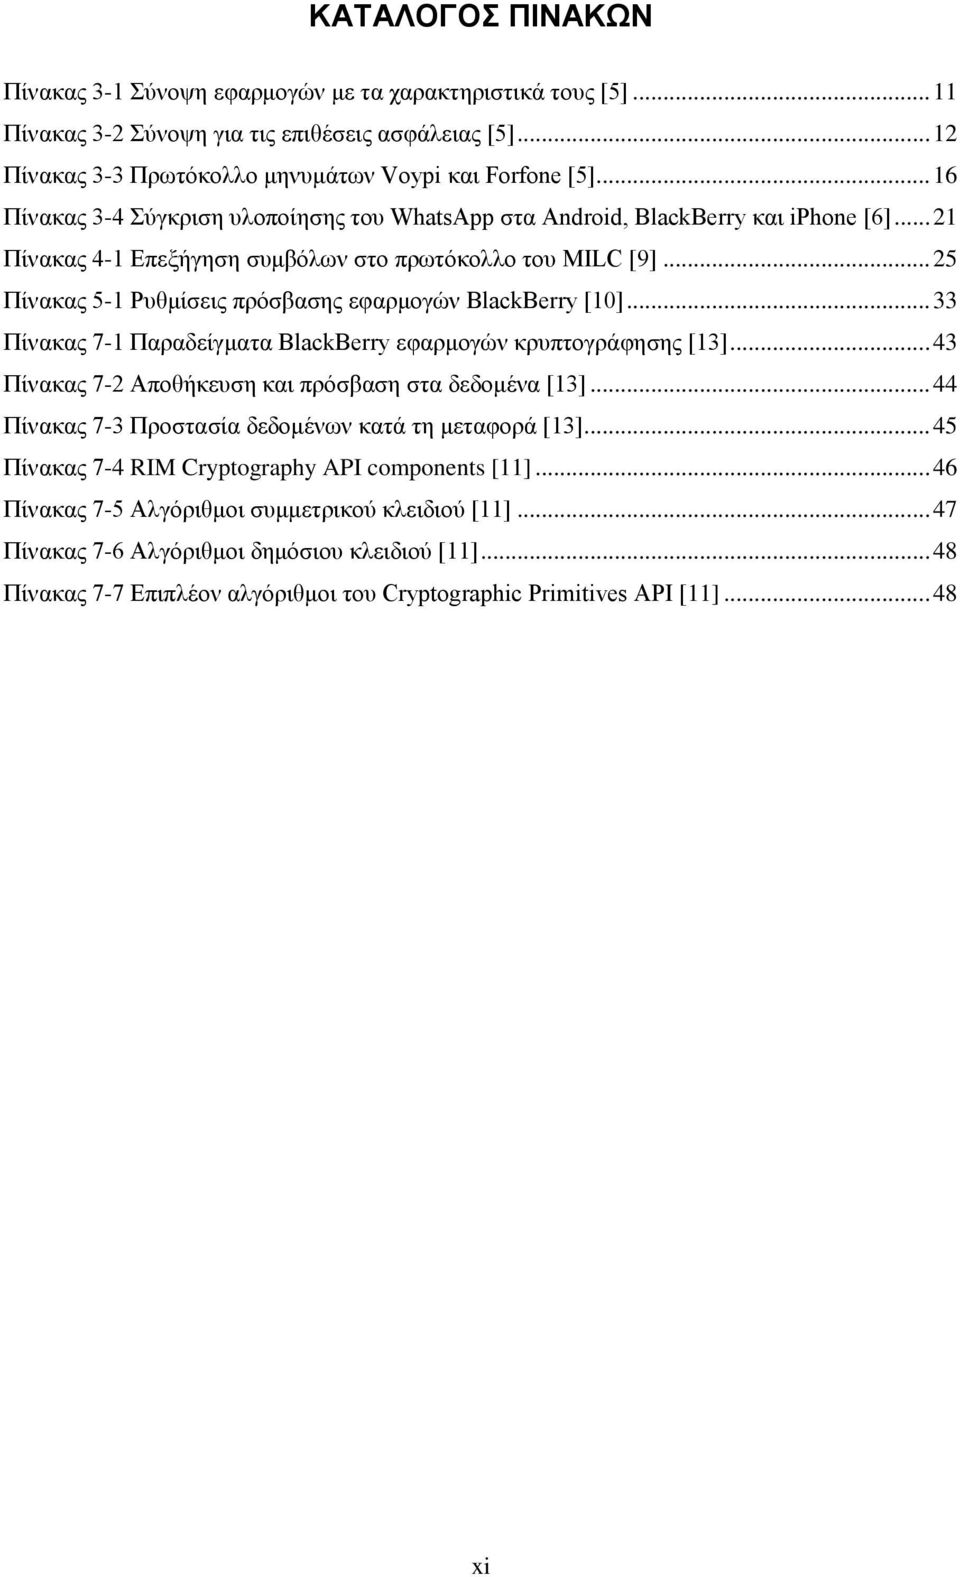 .. 25 Πίνακας 5-1 Ρυθμίσεις πρόσβασης εφαρμογών BlackBerry [10]... 33 Πίνακας 7-1 Παραδείγματα BlackBerry εφαρμογών κρυπτογράφησης [13]... 43 Πίνακας 7-2 Αποθήκευση και πρόσβαση στα δεδομένα [13].